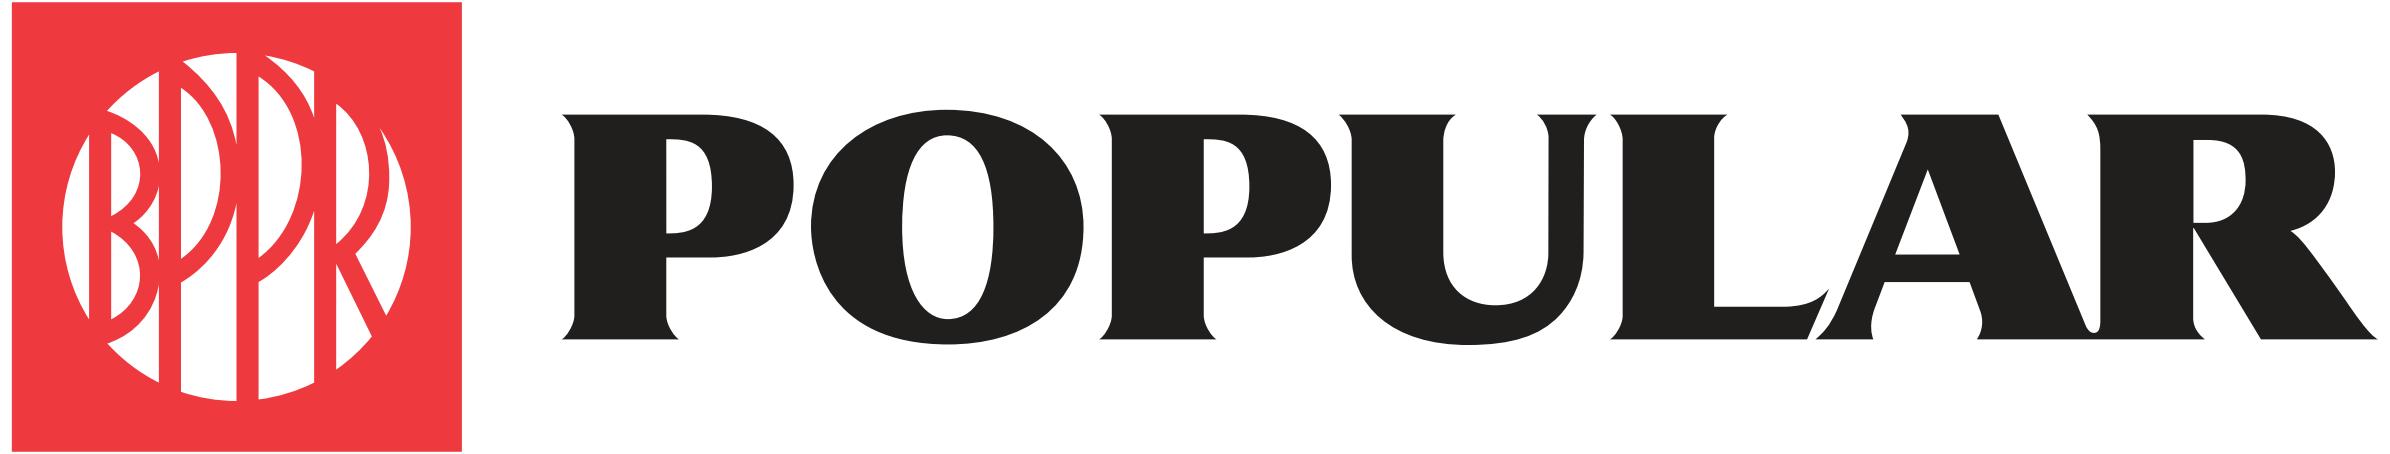 BPPR Popular logo